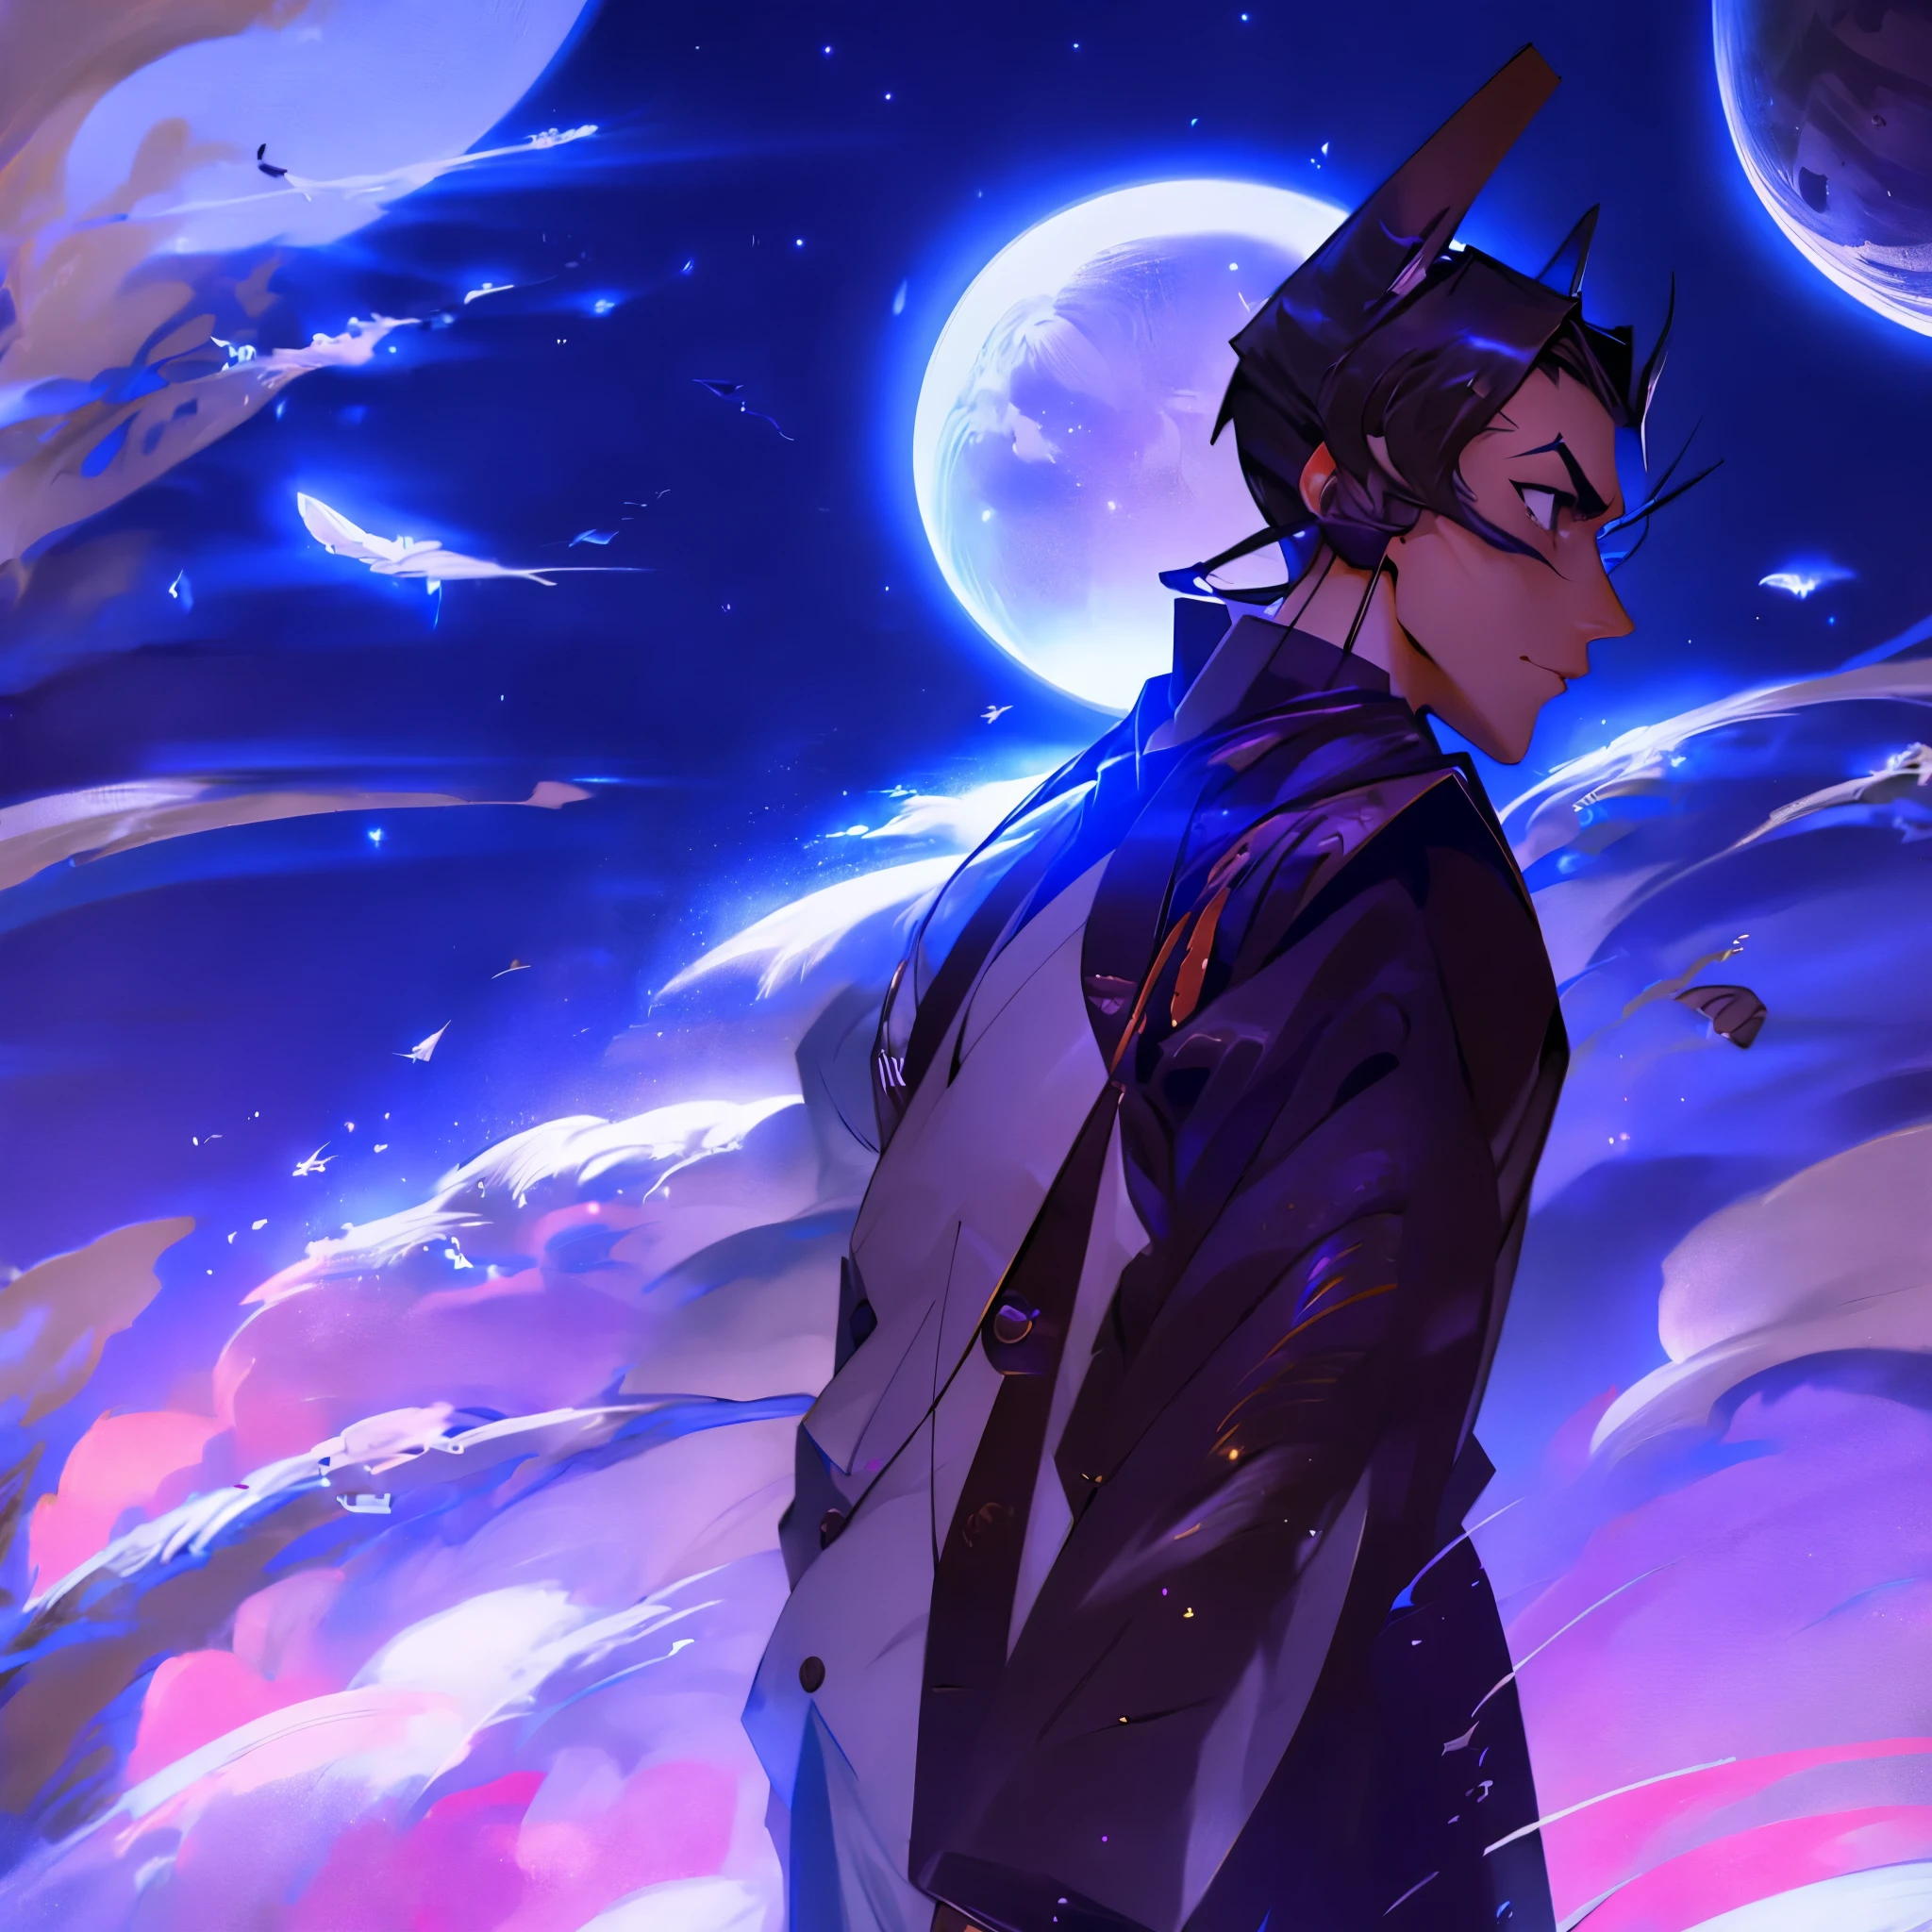 Мужчина в маске в элегантном японском костюме смотрит на луну в космосе со звездной пылью вокруг и звездами за луной. Человек – искатель Луны. Луна большая и красивая, окруженная звездной пылью и тьмой.. Космос окружает его теплой и тревожной атмосферой.. 